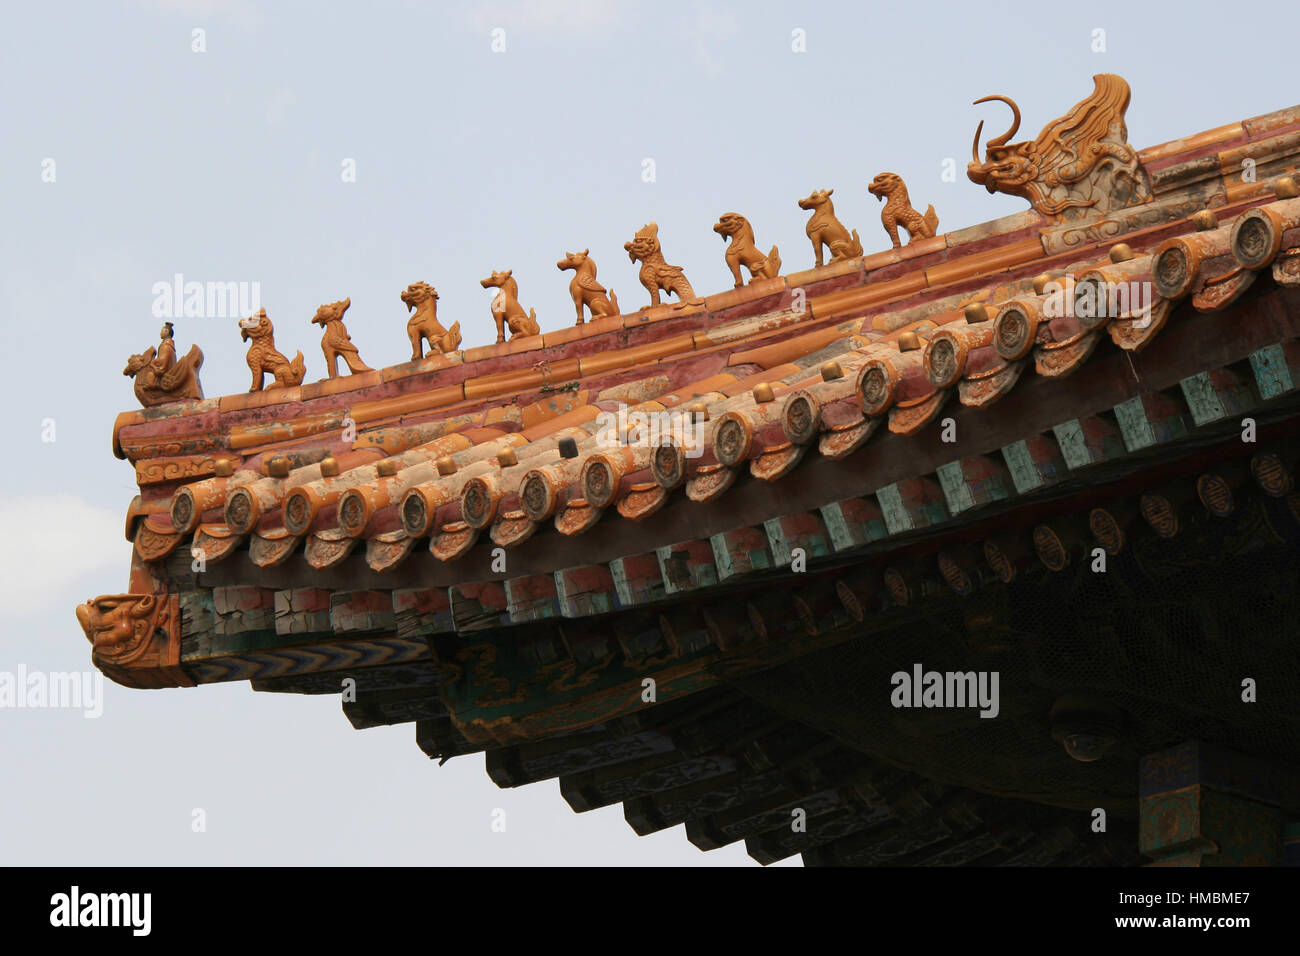 Keramikfiguren schmücken das Dach eines Pavillons in der verbotenen Stadt in Peking (China). Stockfoto